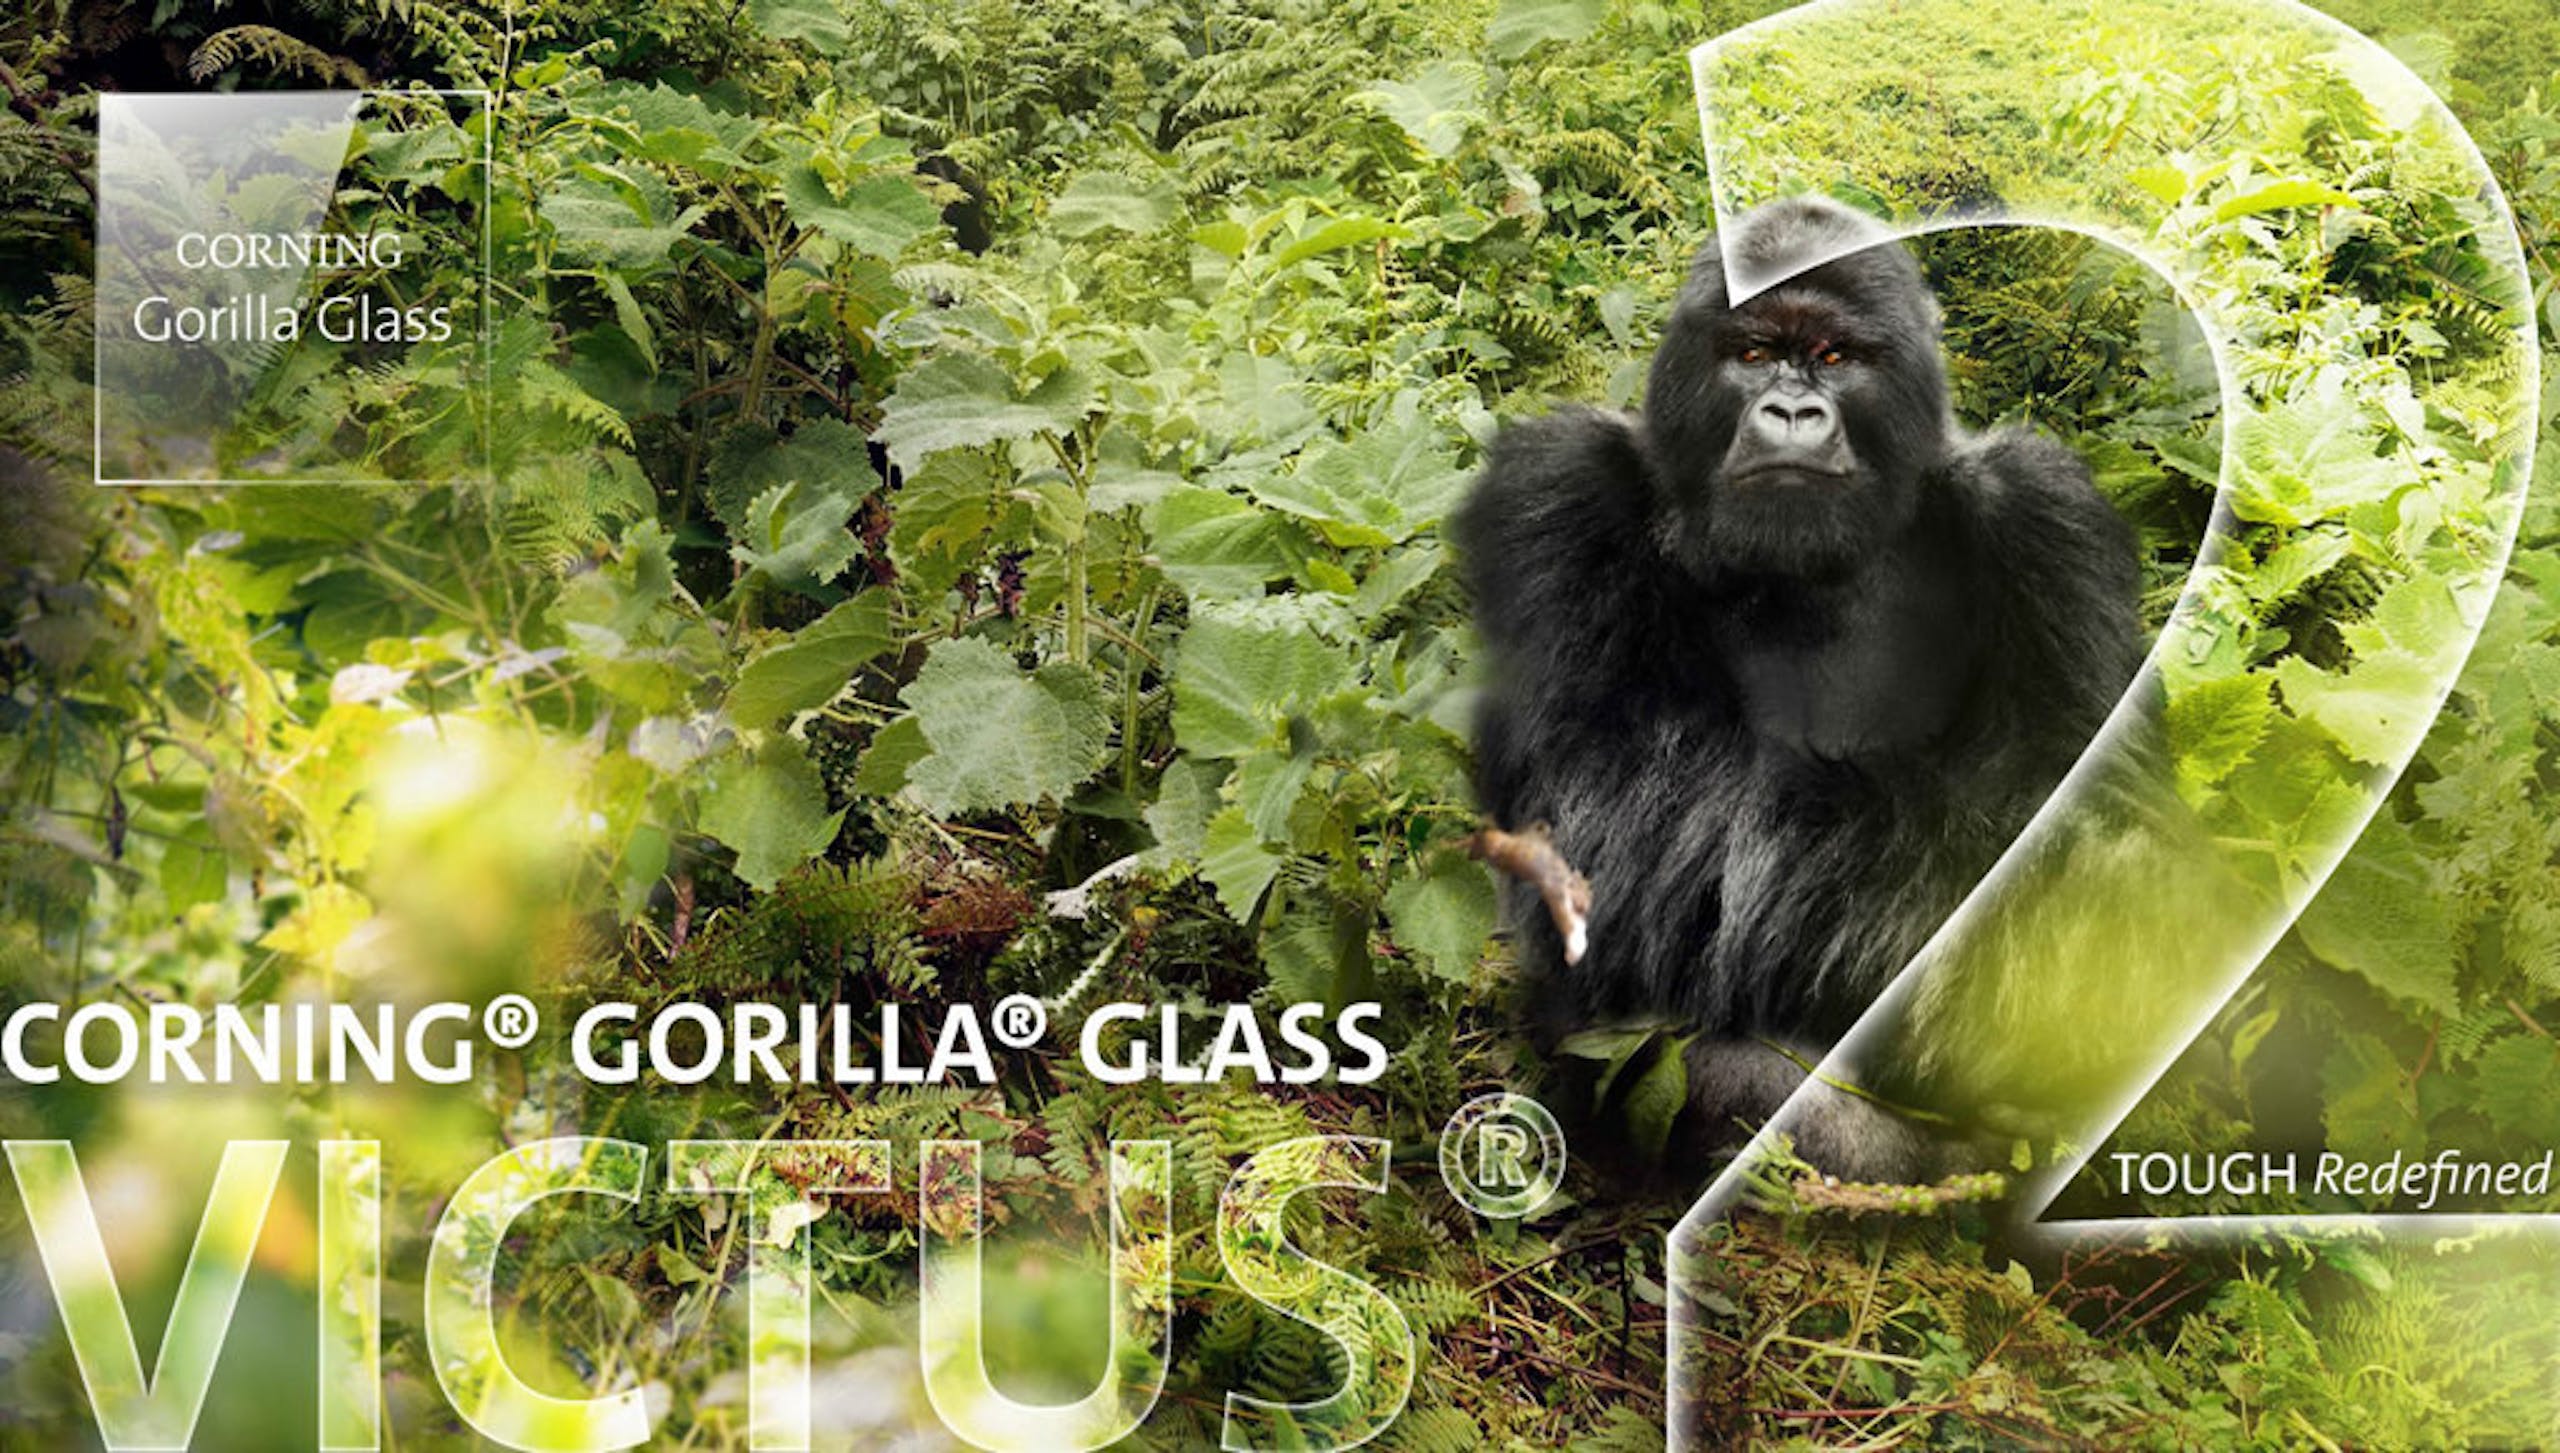 照片中提到了CORNING、Gorilla Glass、CORNING® GORILLA GLASS，包含了大猩猩玻璃、大猩猩玻璃、三星蓋樂世 S22、手機、龍跡